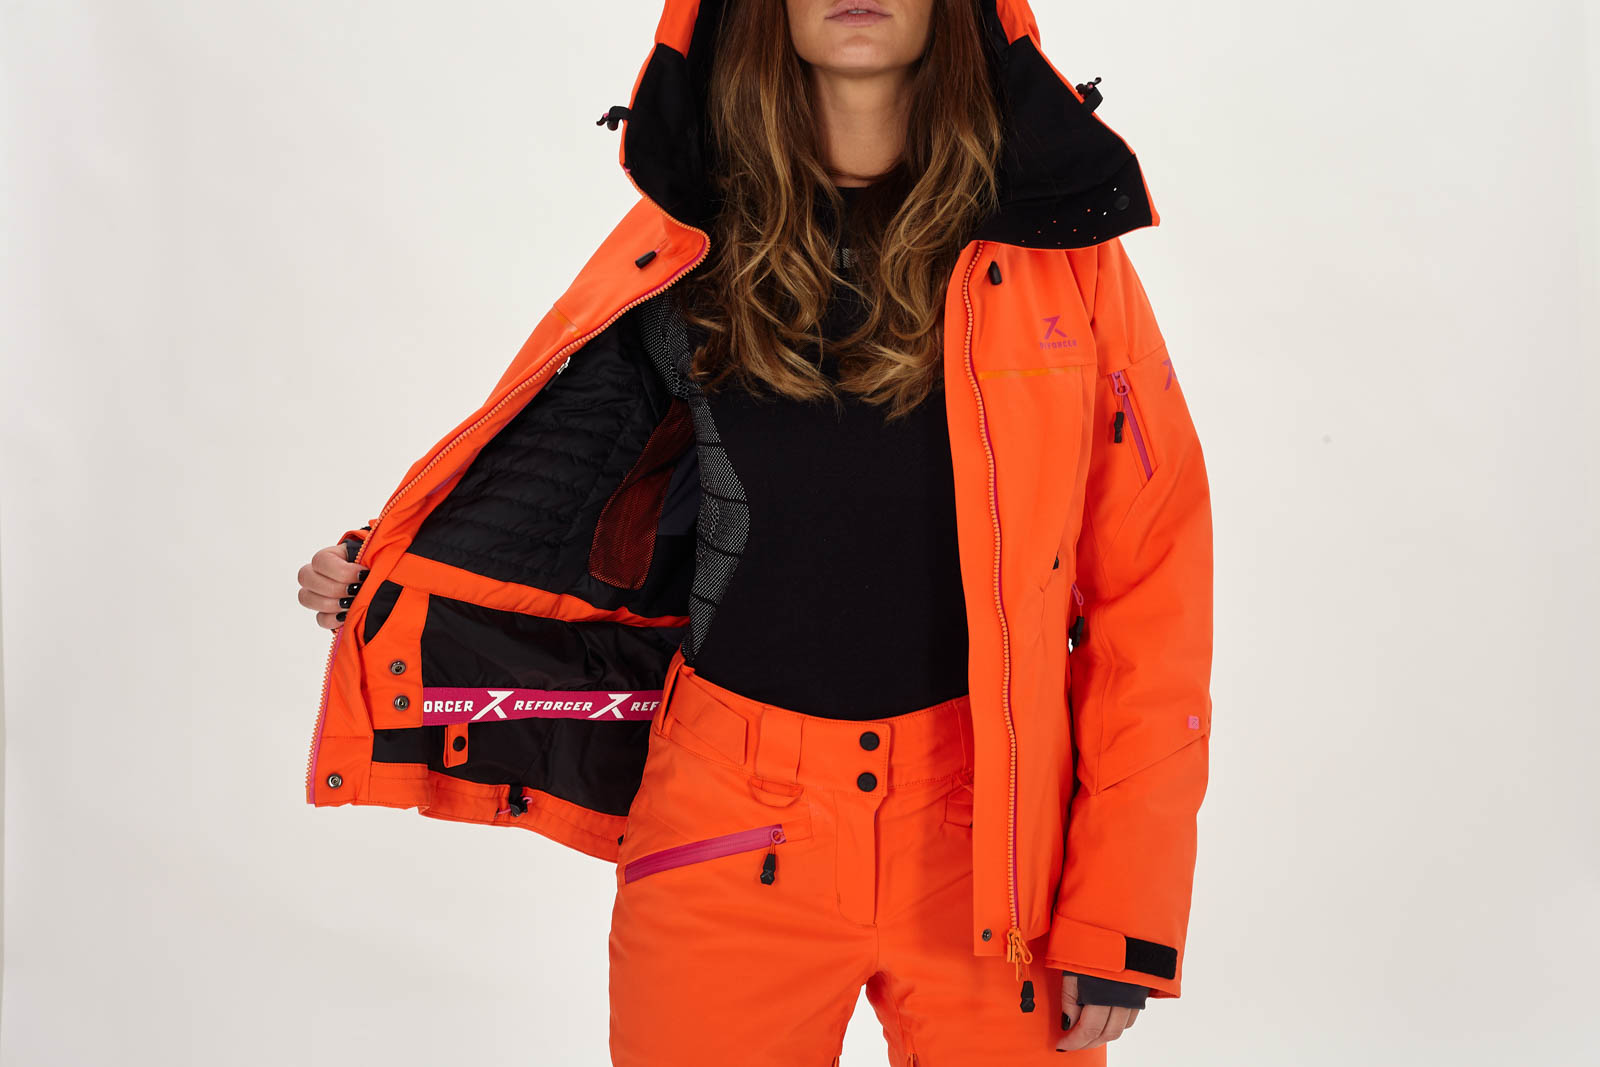 tornillo Sofocar laberinto Chaqueta de esquí mujer Advancer - Reforcer, ropa de esquí de alta calidad,  hecha en Europa